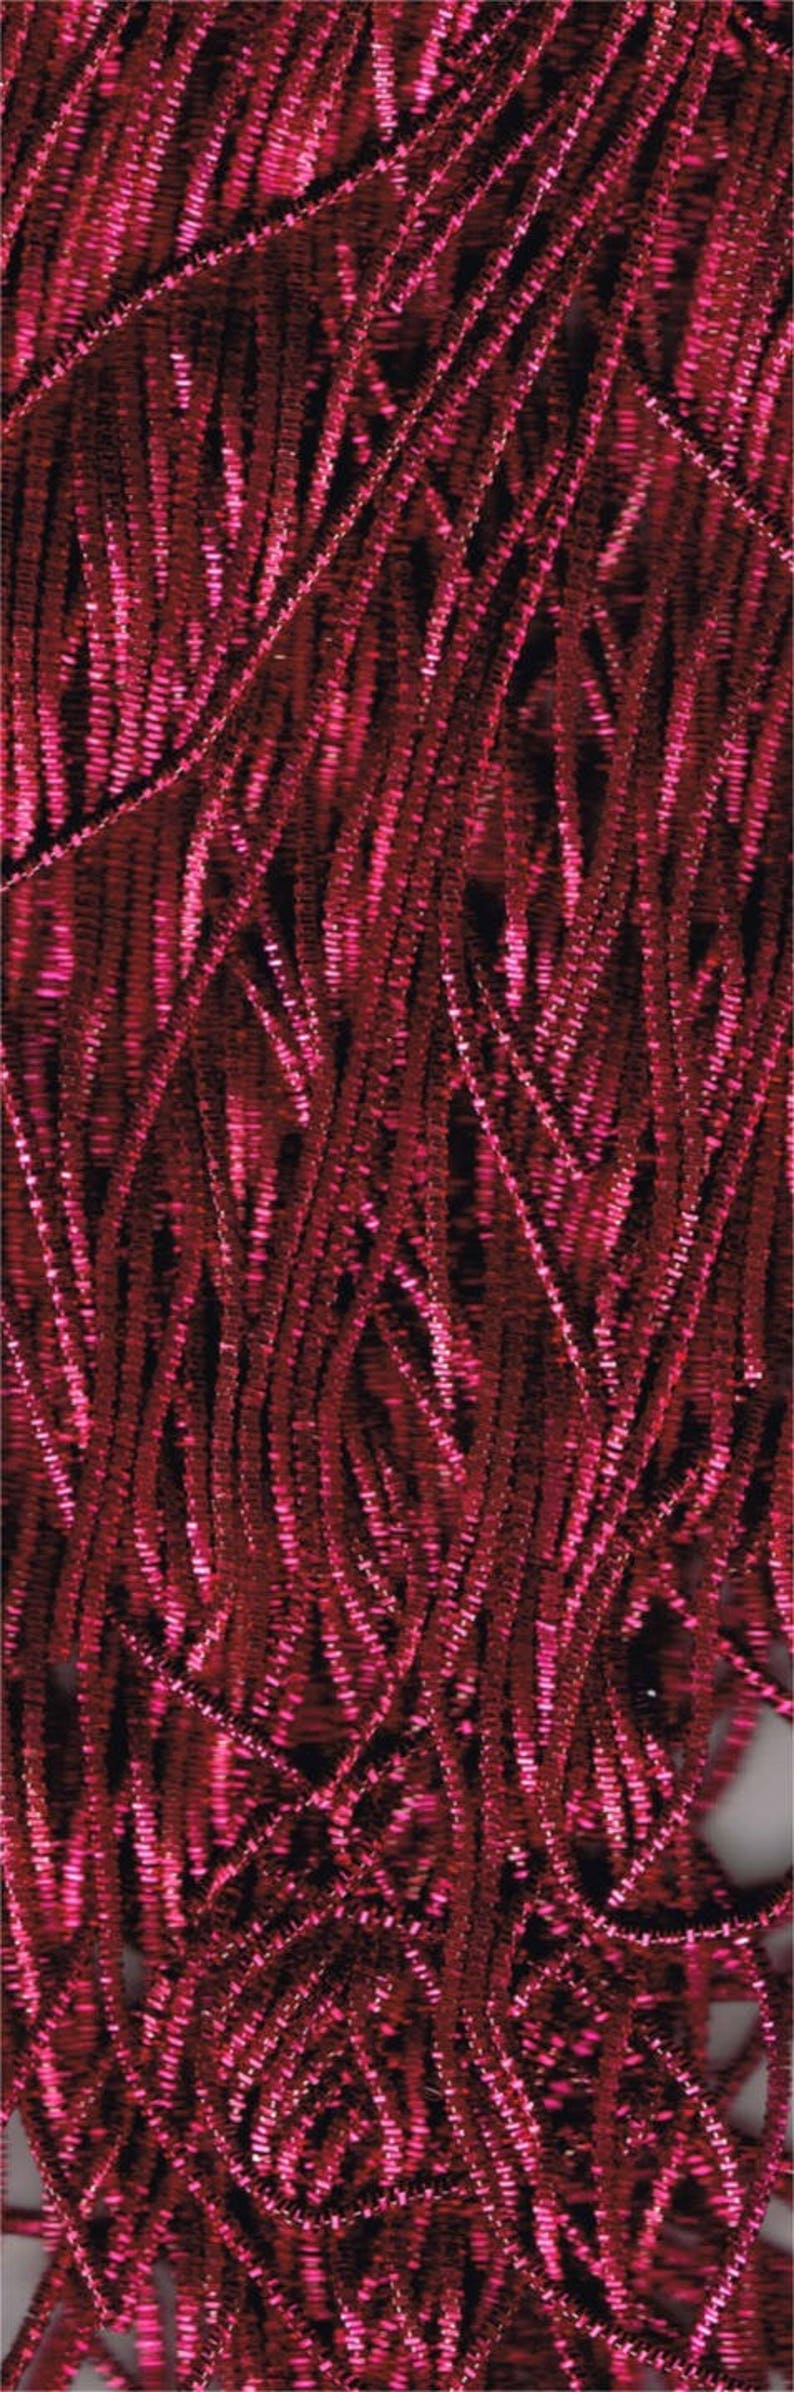 Cannetille frisée fuchsia 10: ressort métallique image 2